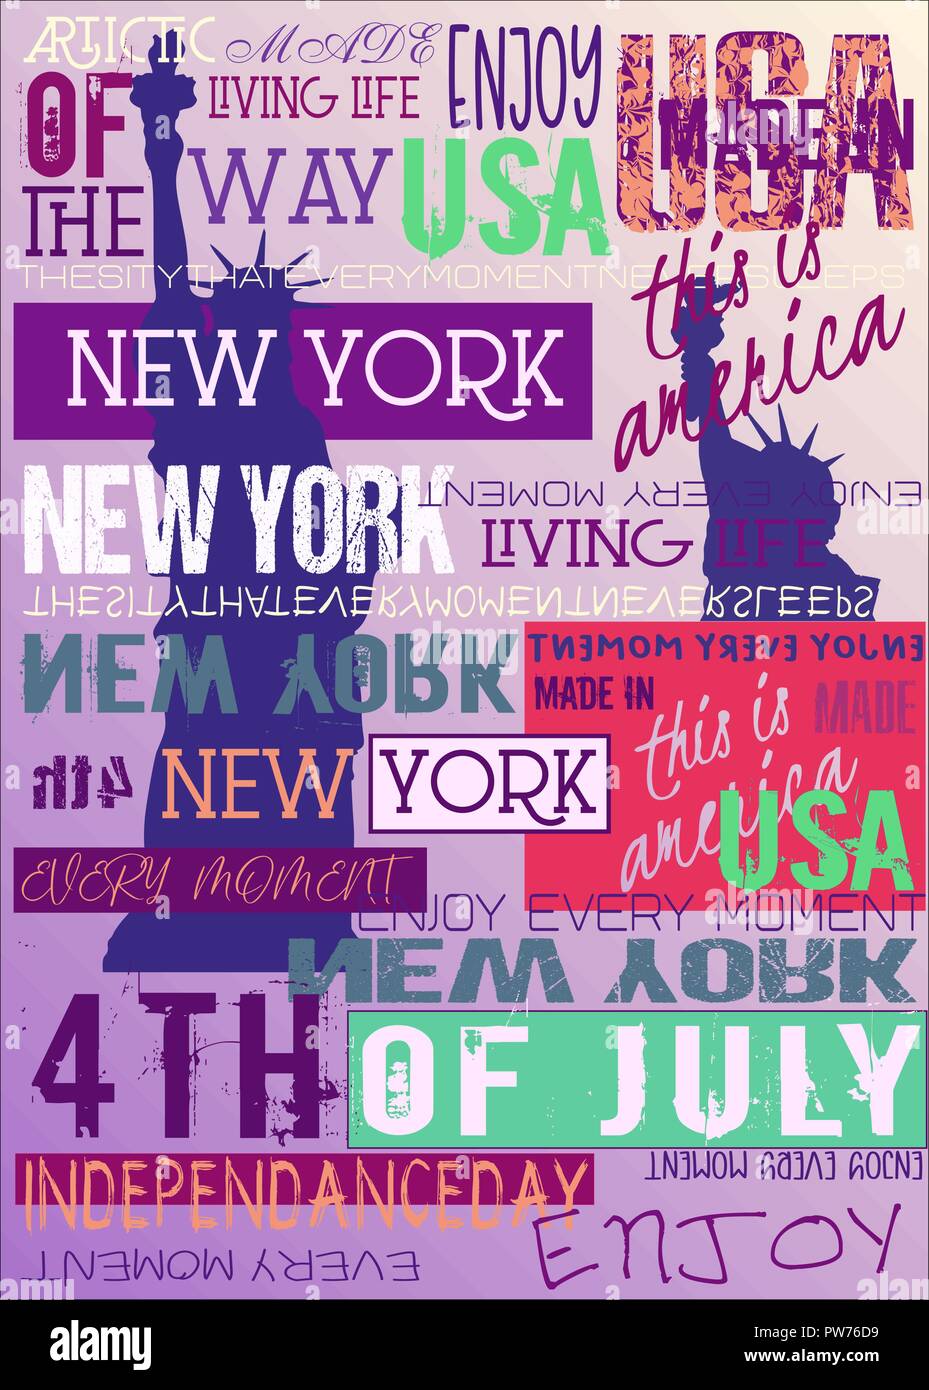 New York USA NEW YORK Poster 4 Édition de juillet Illustration de Vecteur